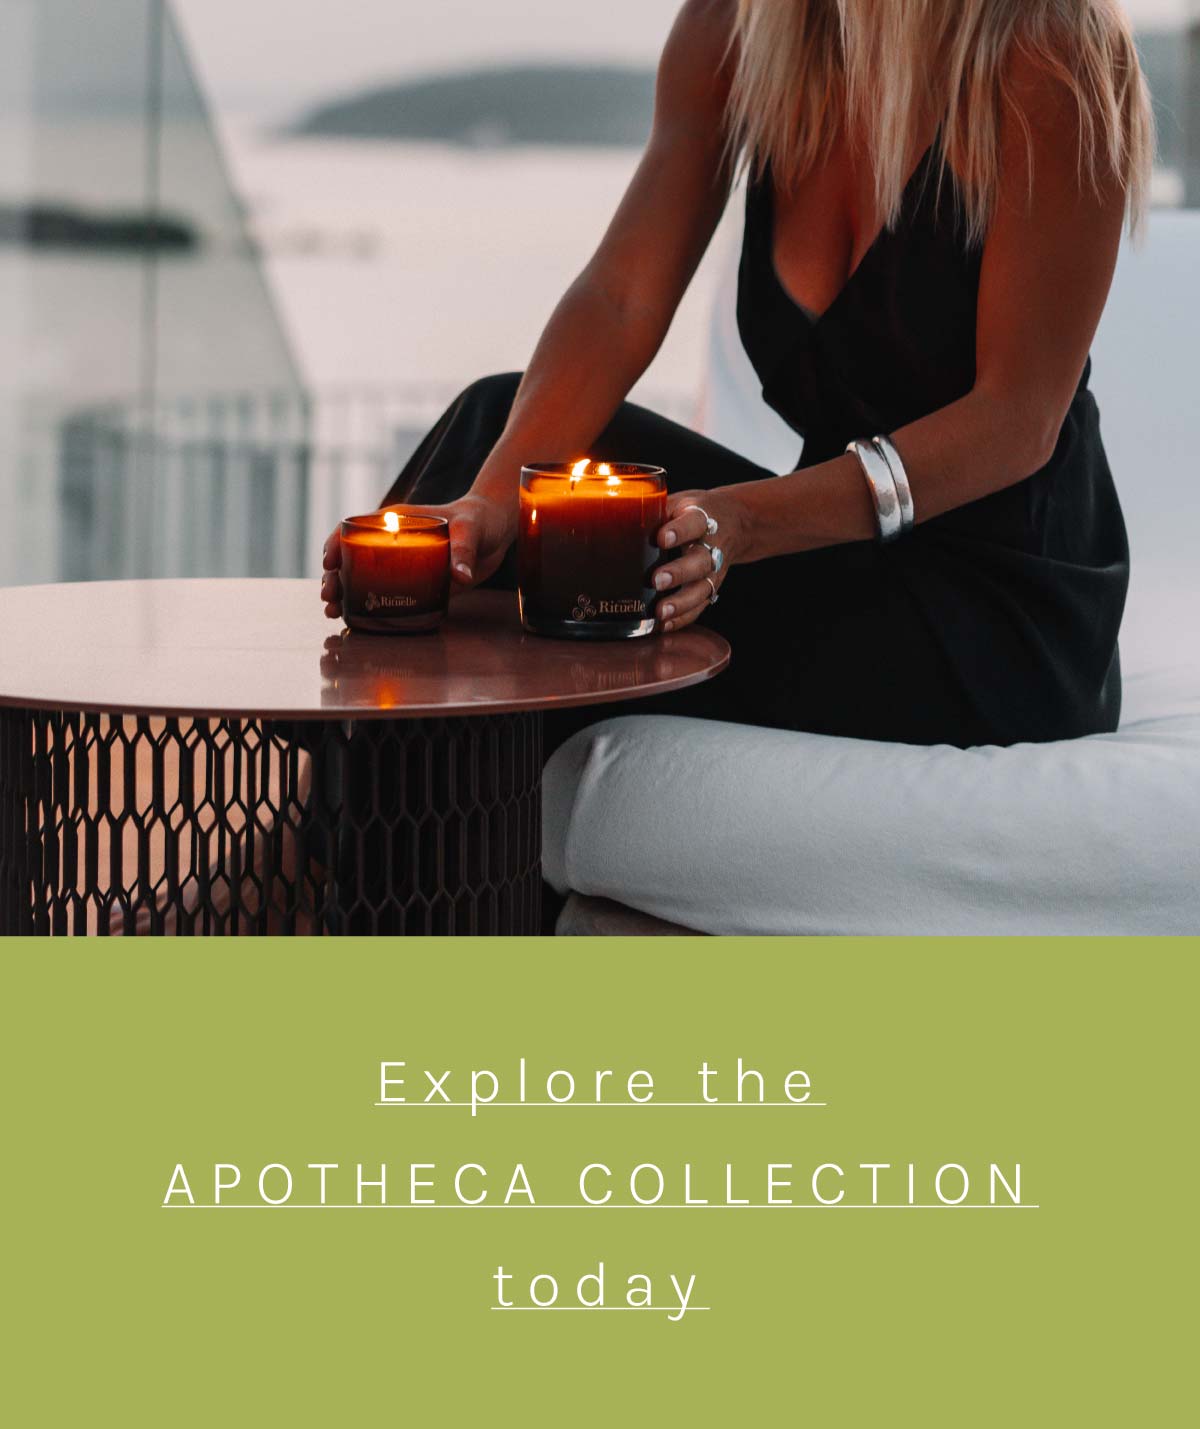 Explore the Apotheca collection today.